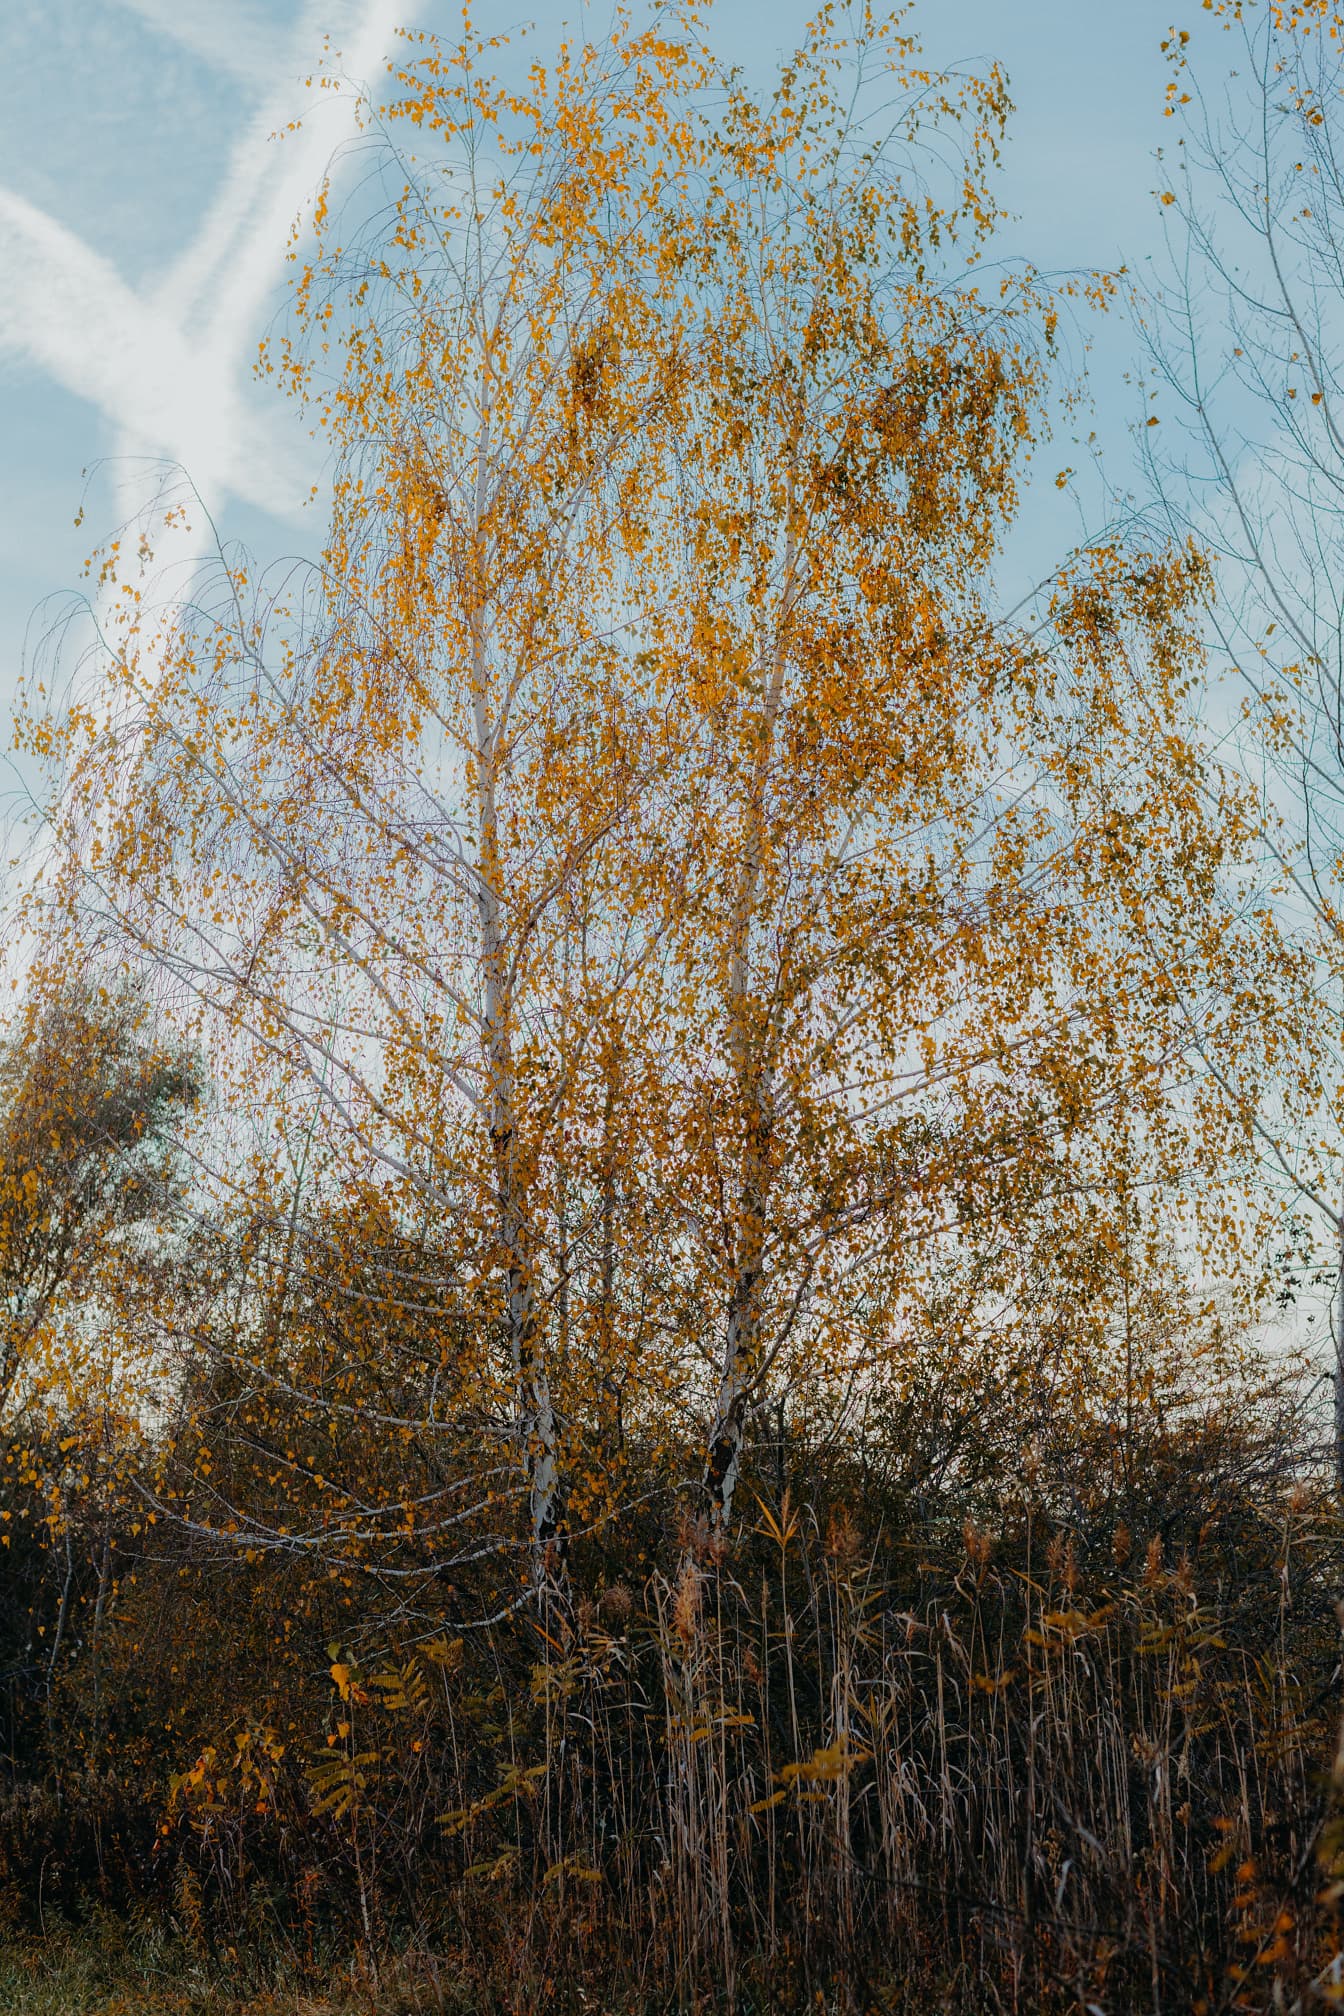 Ψηλό δέντρο σημύδας με πορτοκαλί κίτρινο φύλλο την εποχή του φθινοπώρου